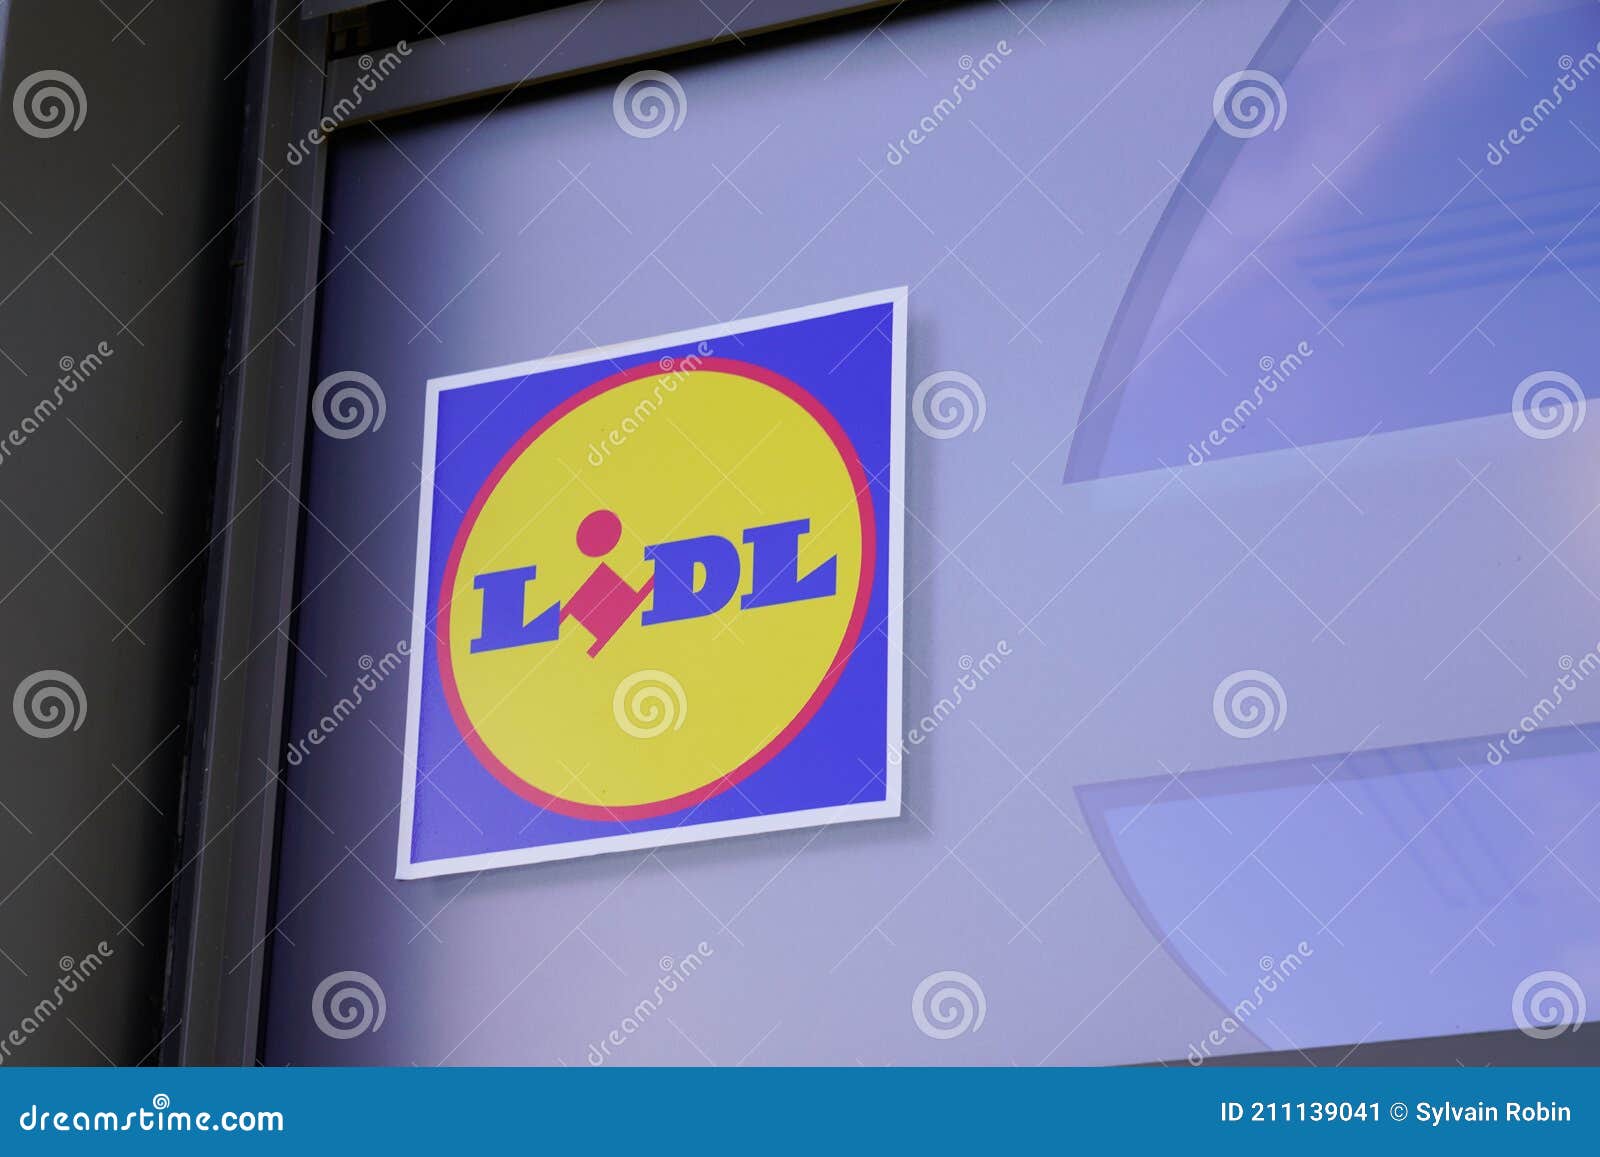 koud Wijzigingen van Geliefde Lidl Logo Brand and Sign Text Front of Store Market Global Hard Discounter  Supermarket Editorial Photo - Image of german, banner: 211139041